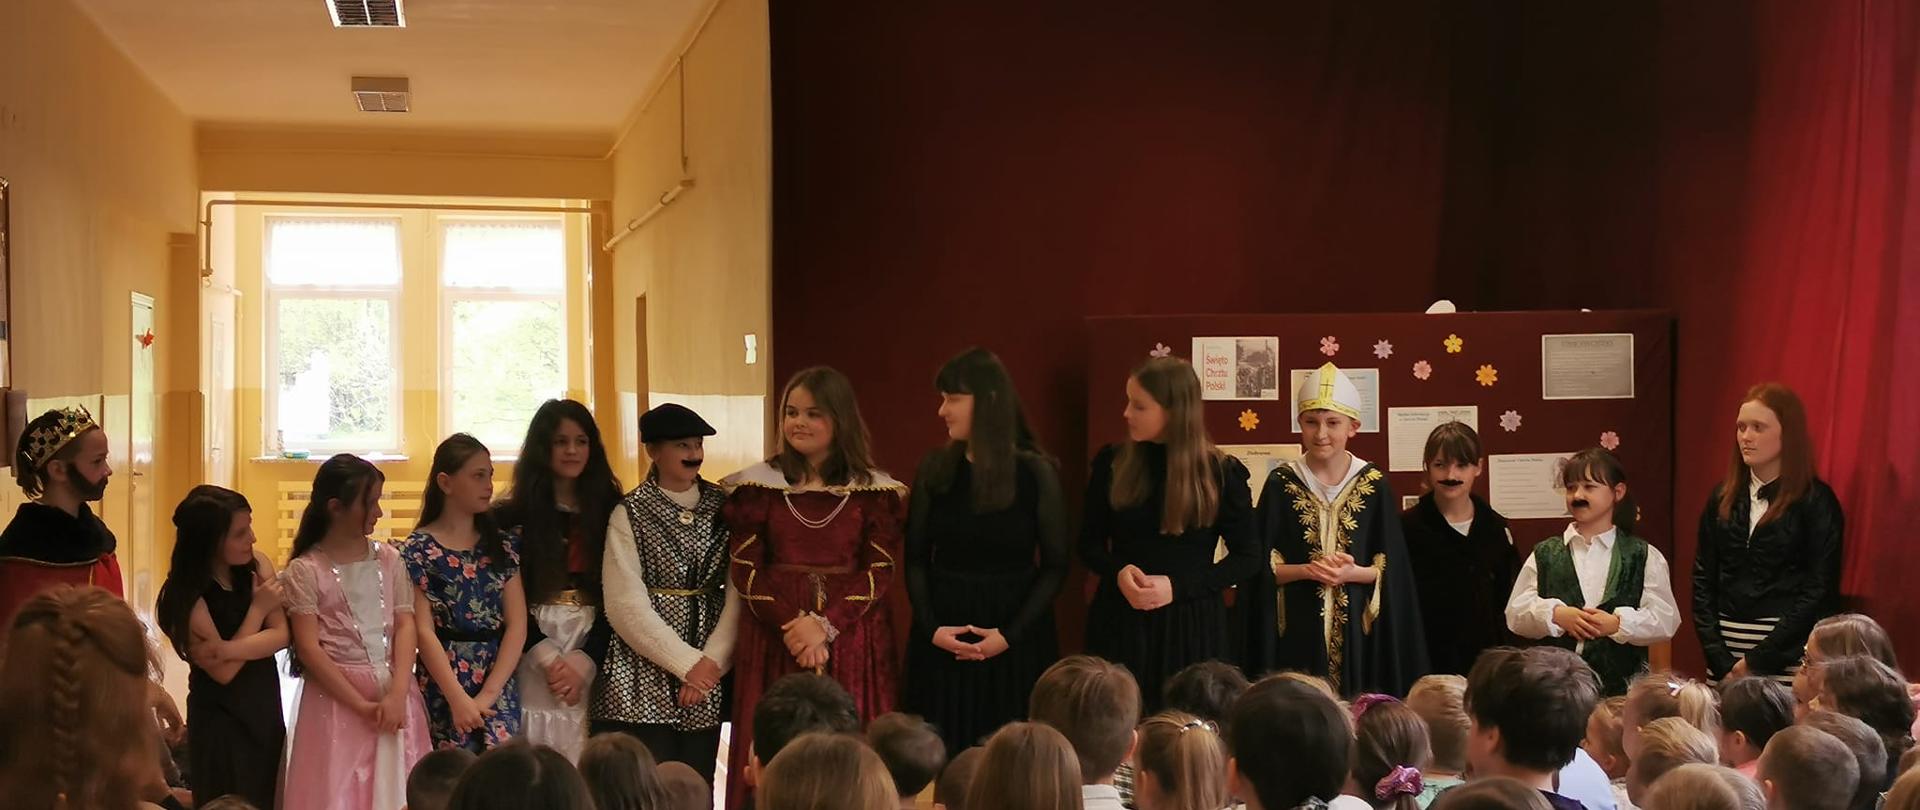 Uczniowie przebranie w stroje królewskie i szlacheckie, w długich szatach, koronach, niektórzy z doklejonymi wąsami odgrywają akt przyjęcia chrztu przez Polskę na szkolnym korytarzu, w tle dekoracja na bordowym płótnie